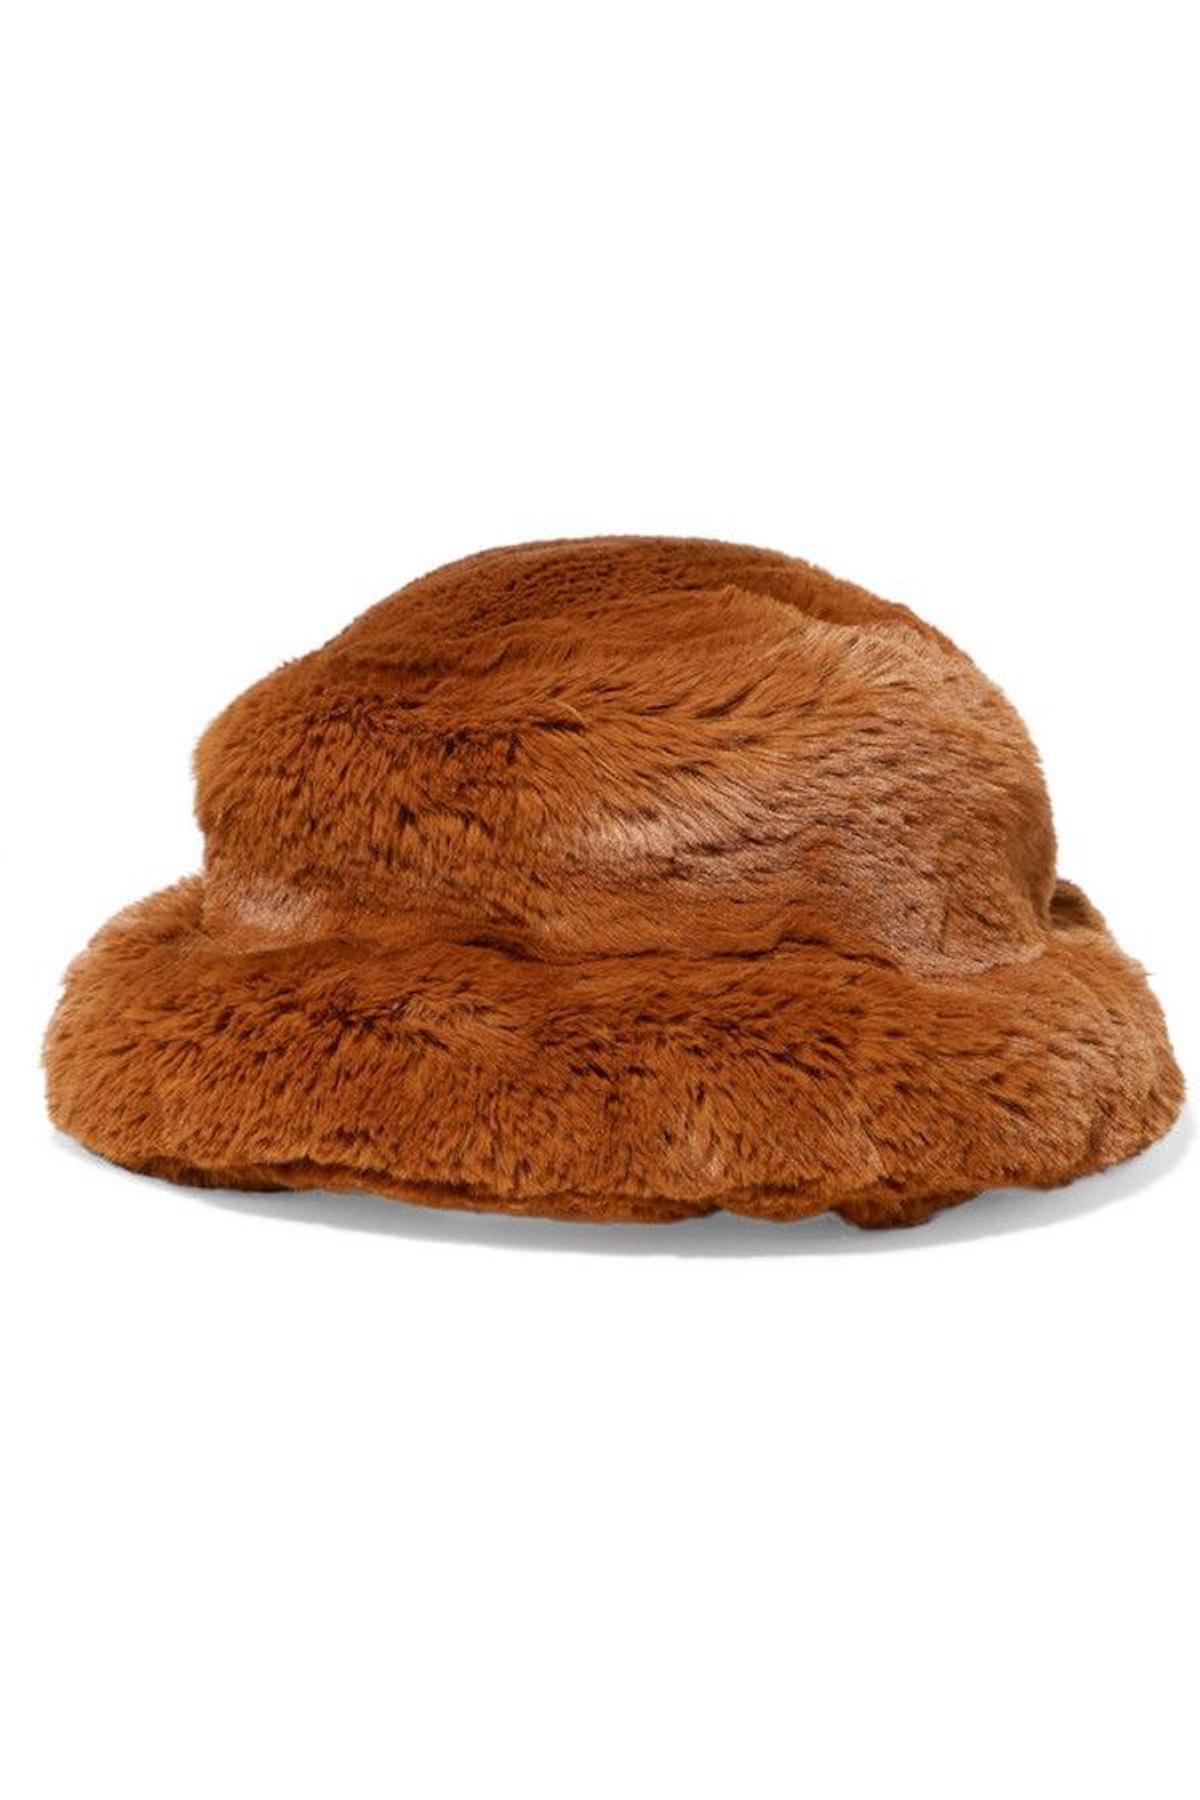 El sombrero Furry